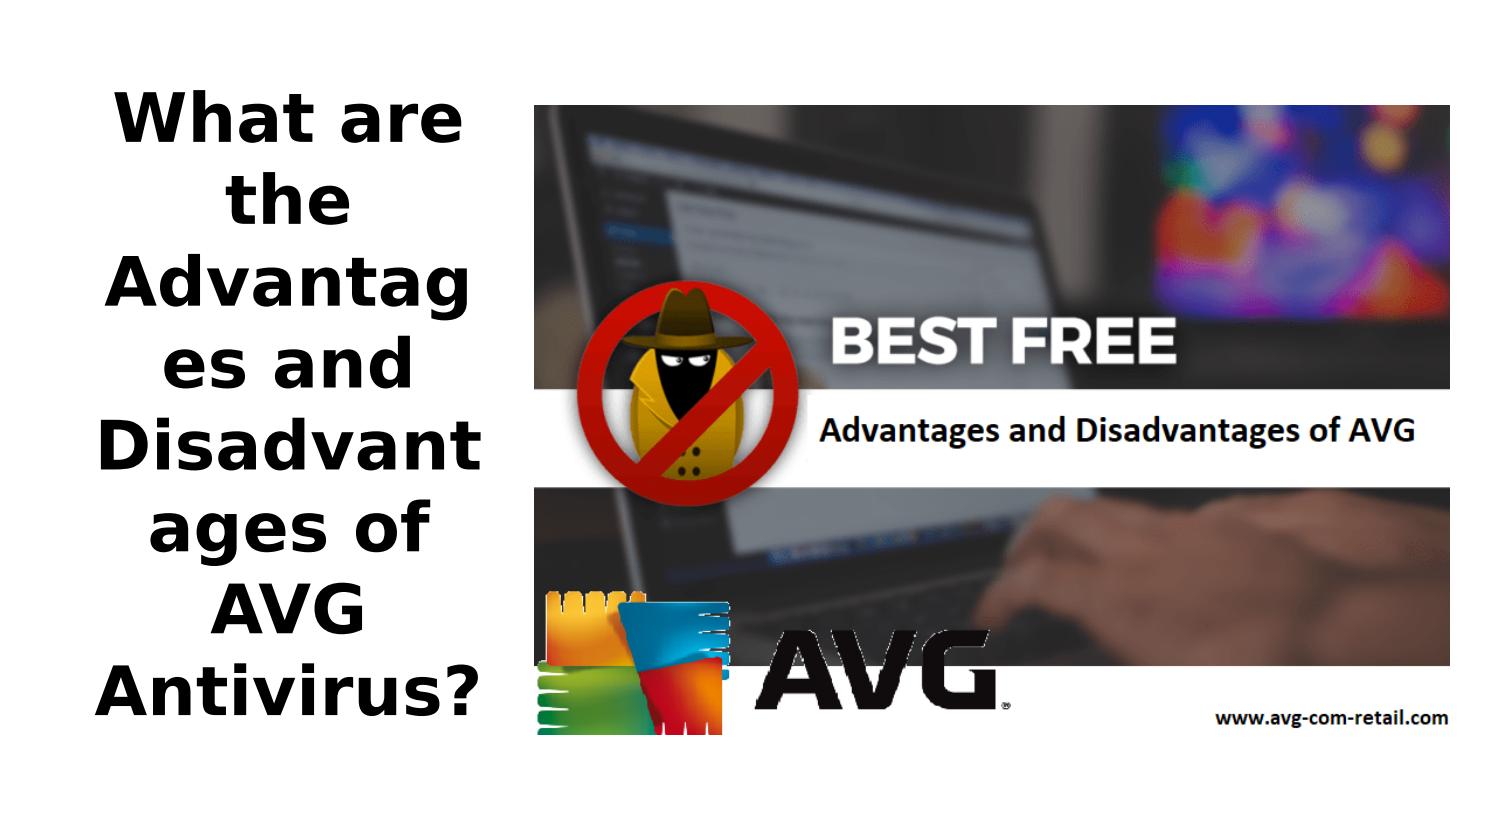 avg malware desvantages